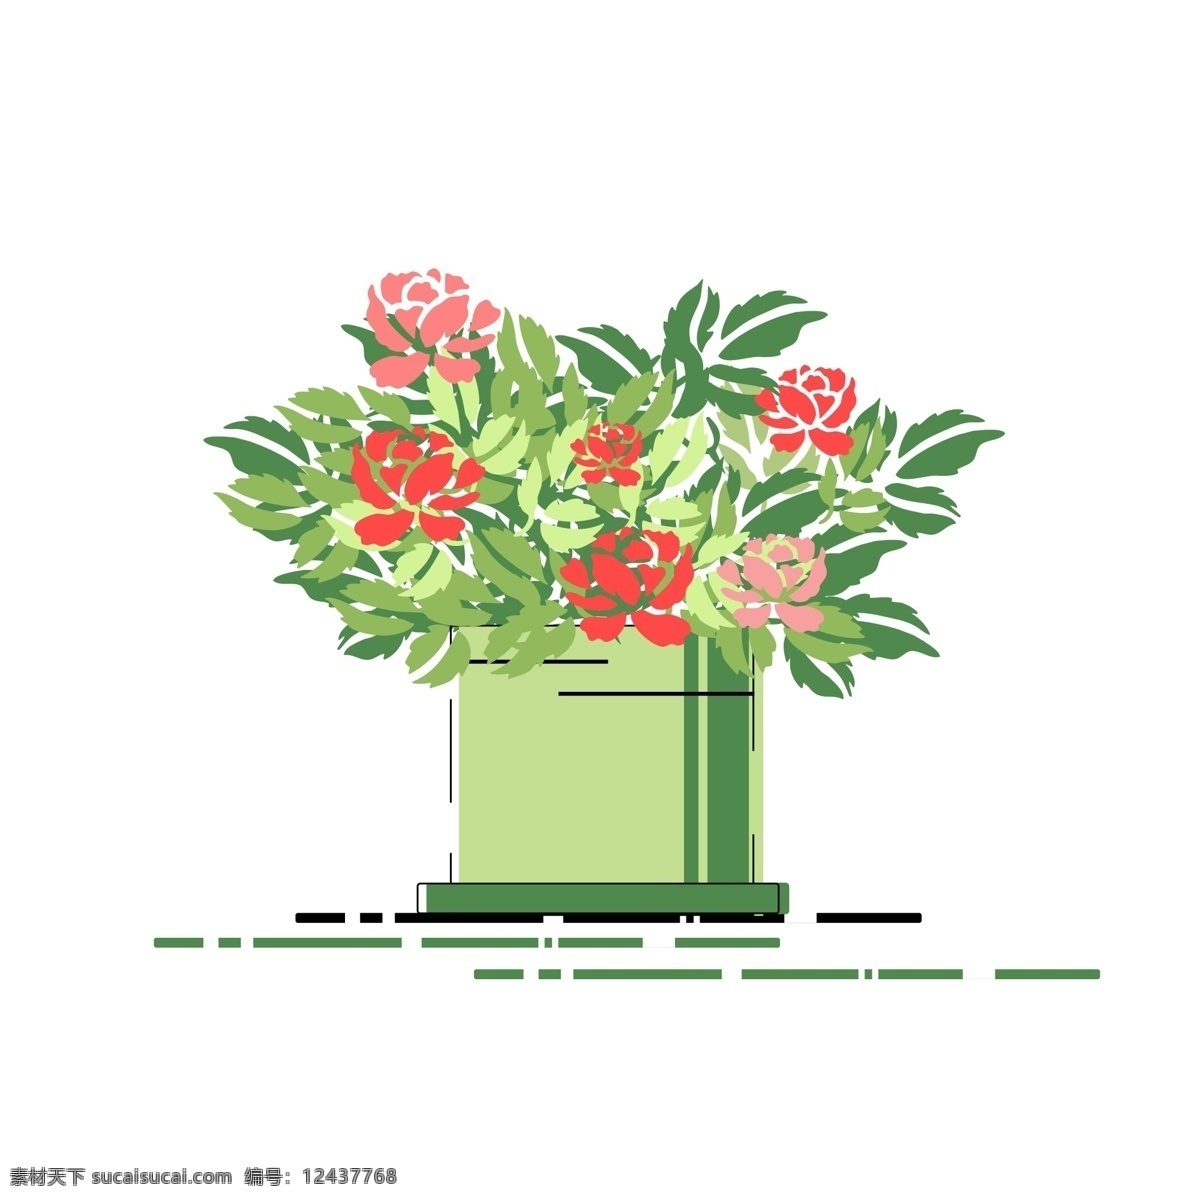 原创 小清 新手 绘 风 花卉 盆栽 插画 元素 小清新 绿色 线条 牡丹花 配图